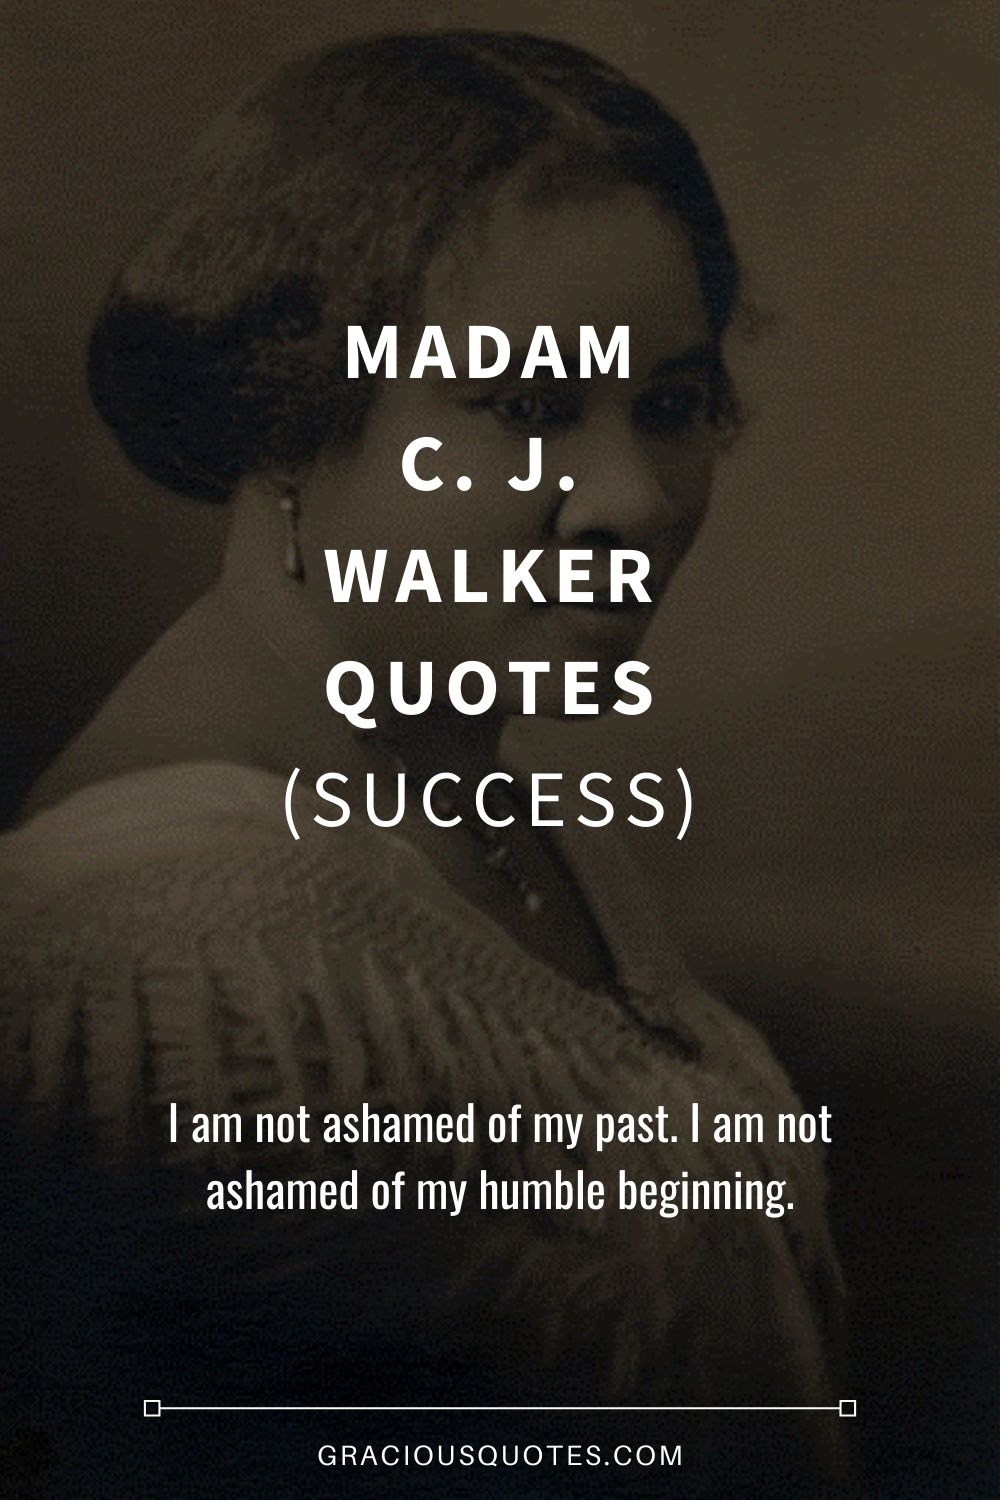 Madam C. J. Walker Quotes (SUCCESS) - Gracious Quotes